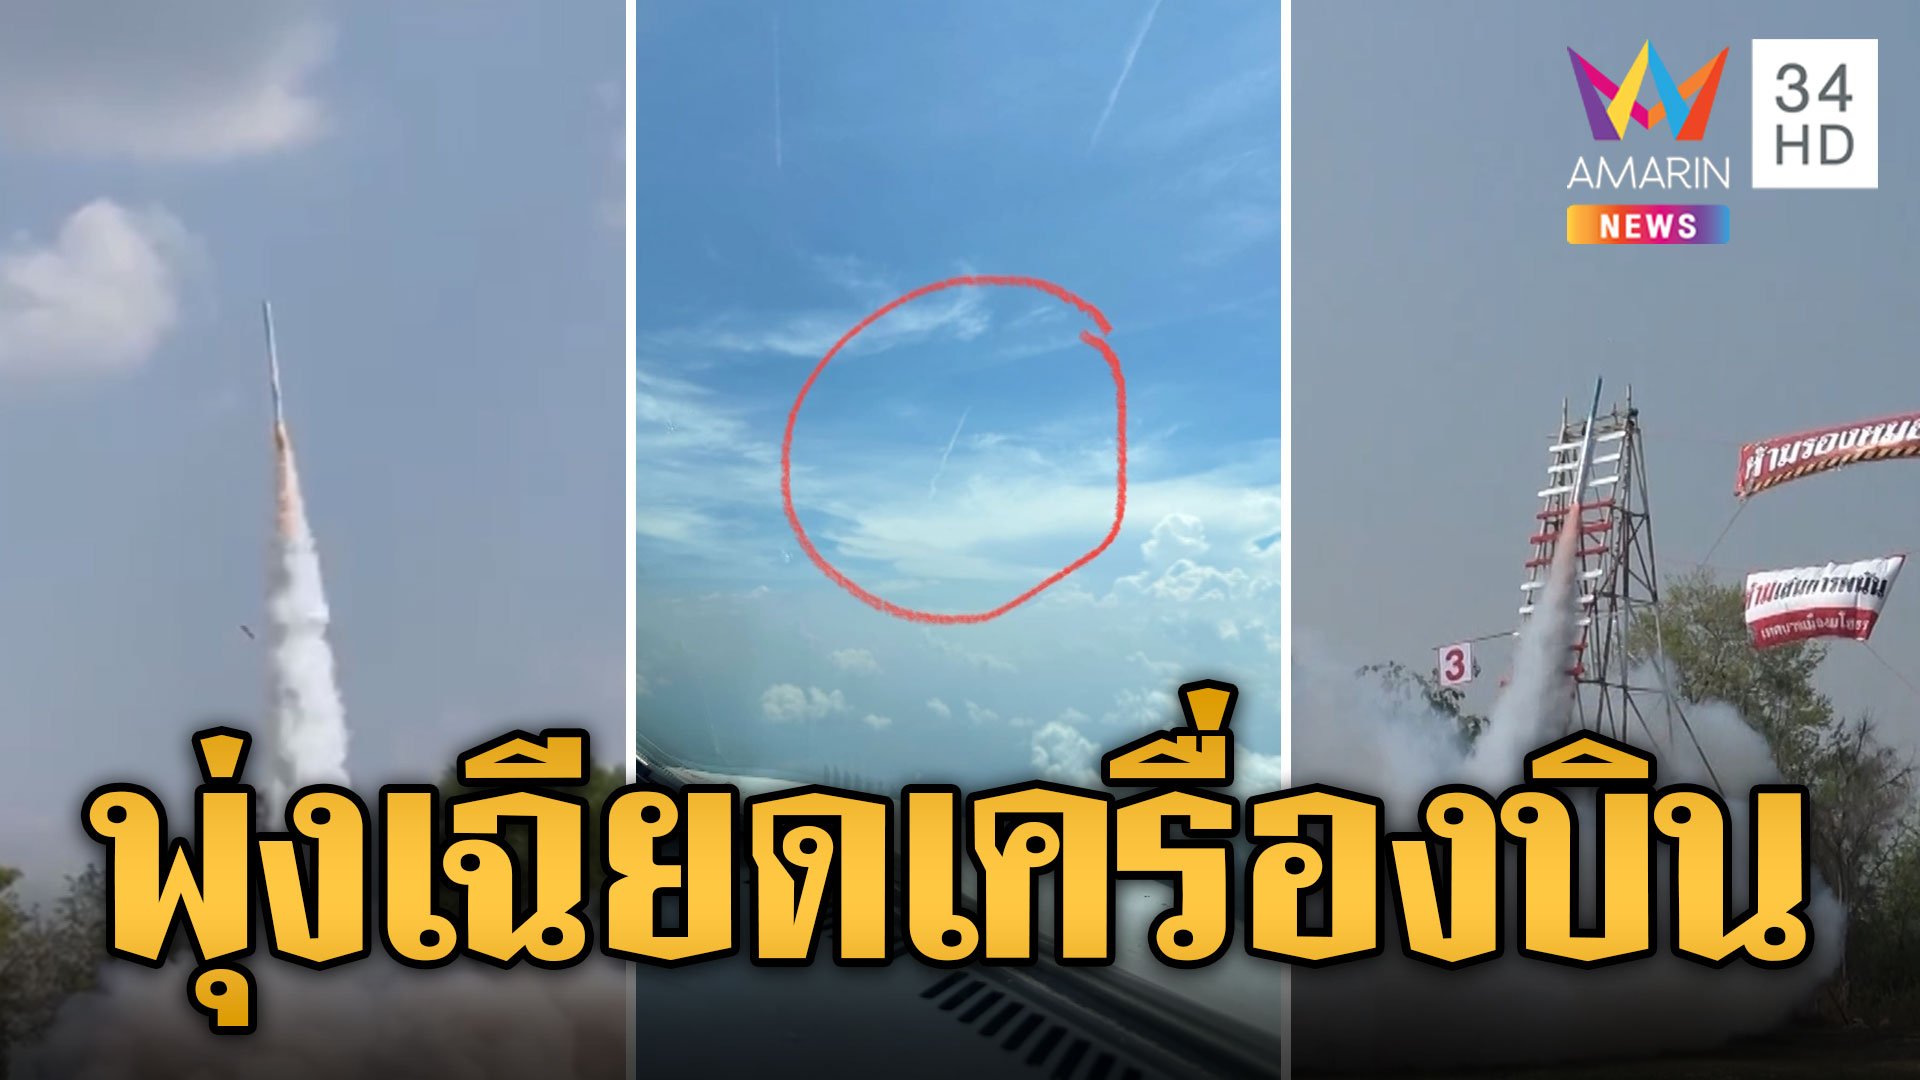 นักบินตะลึง! บั้งไฟโผล่บนฟ้าเฉียดเครื่องบิน เสี่ยงอันตราย | ข่าวอรุณอมรินทร์ | 18 พ.ค. 67 | AMARIN TVHD34